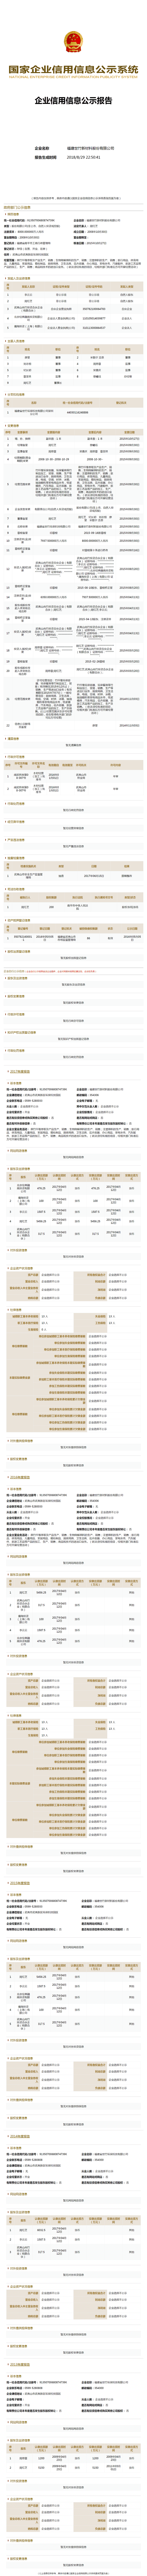 福建世竹新材料股份有限公司 (1)